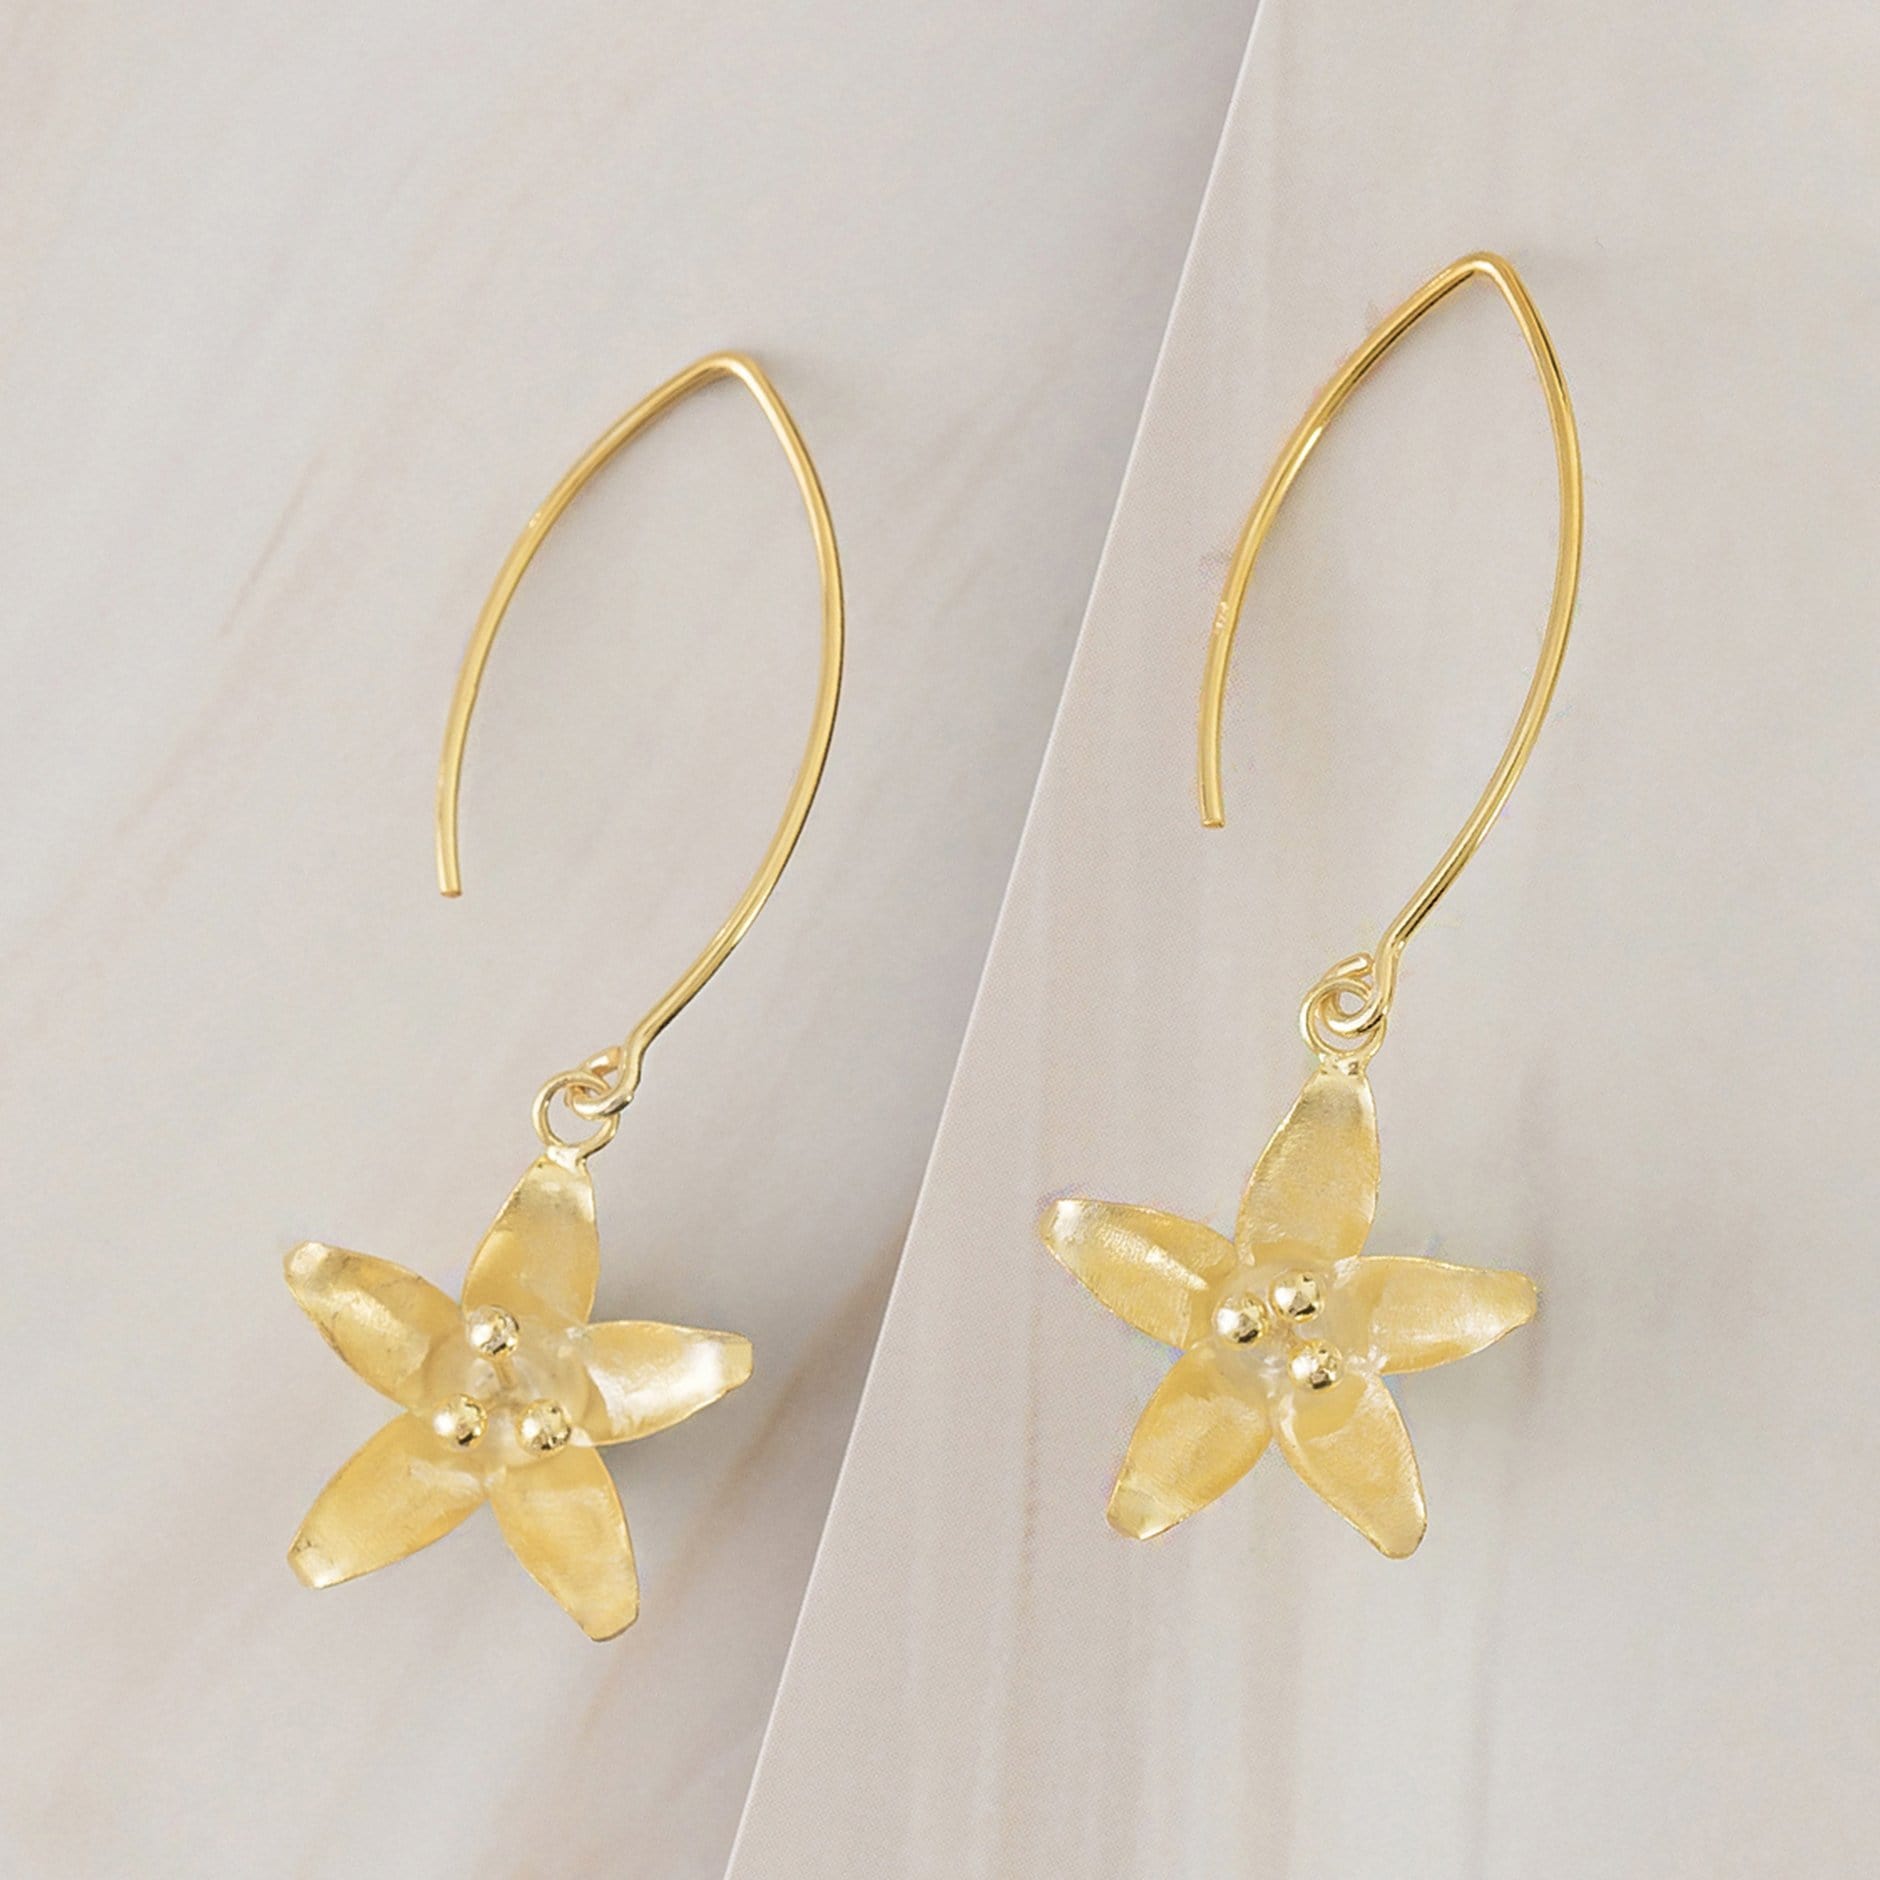 Emblem Jewelry Earrings Gold Tone Spring Starflower Drop Earrings